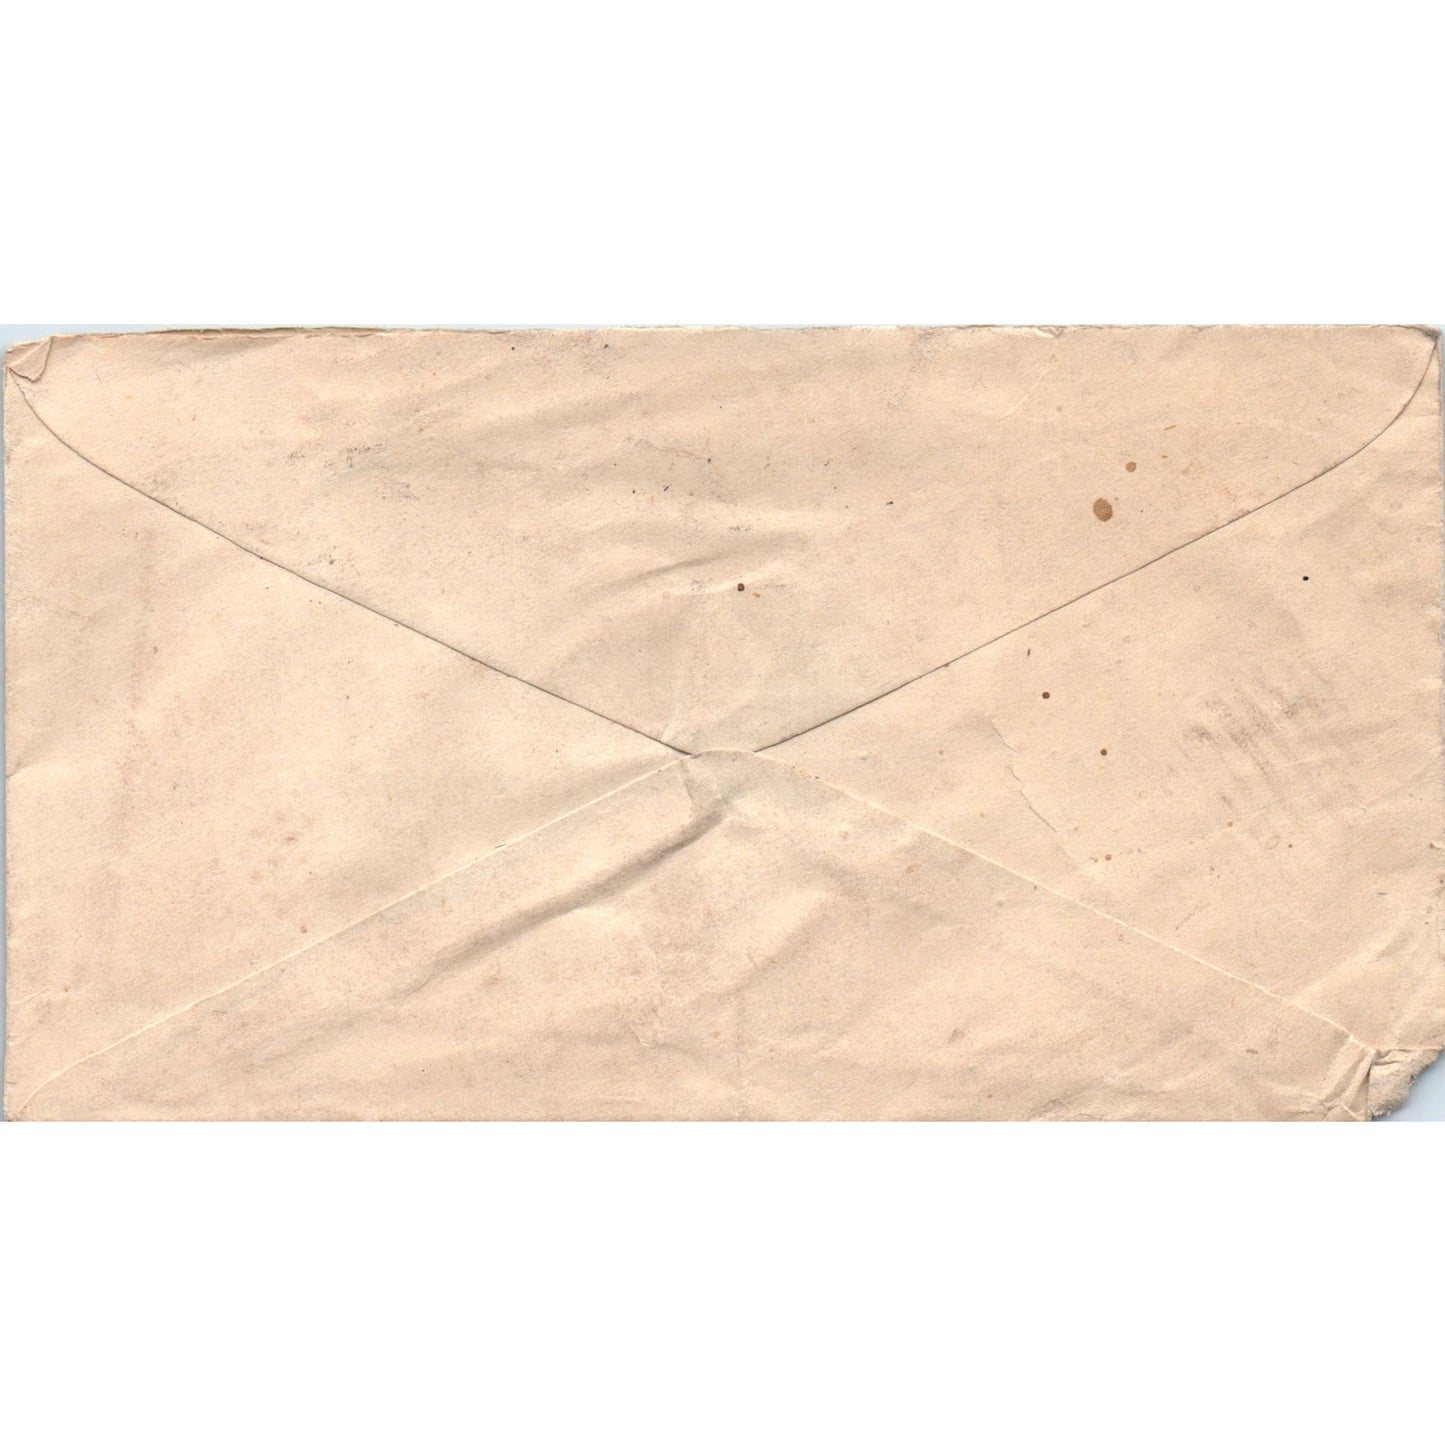 1921 Crompton & Knowles Loom Works Philadelphia Postal Cover Envelope TG7-PC3